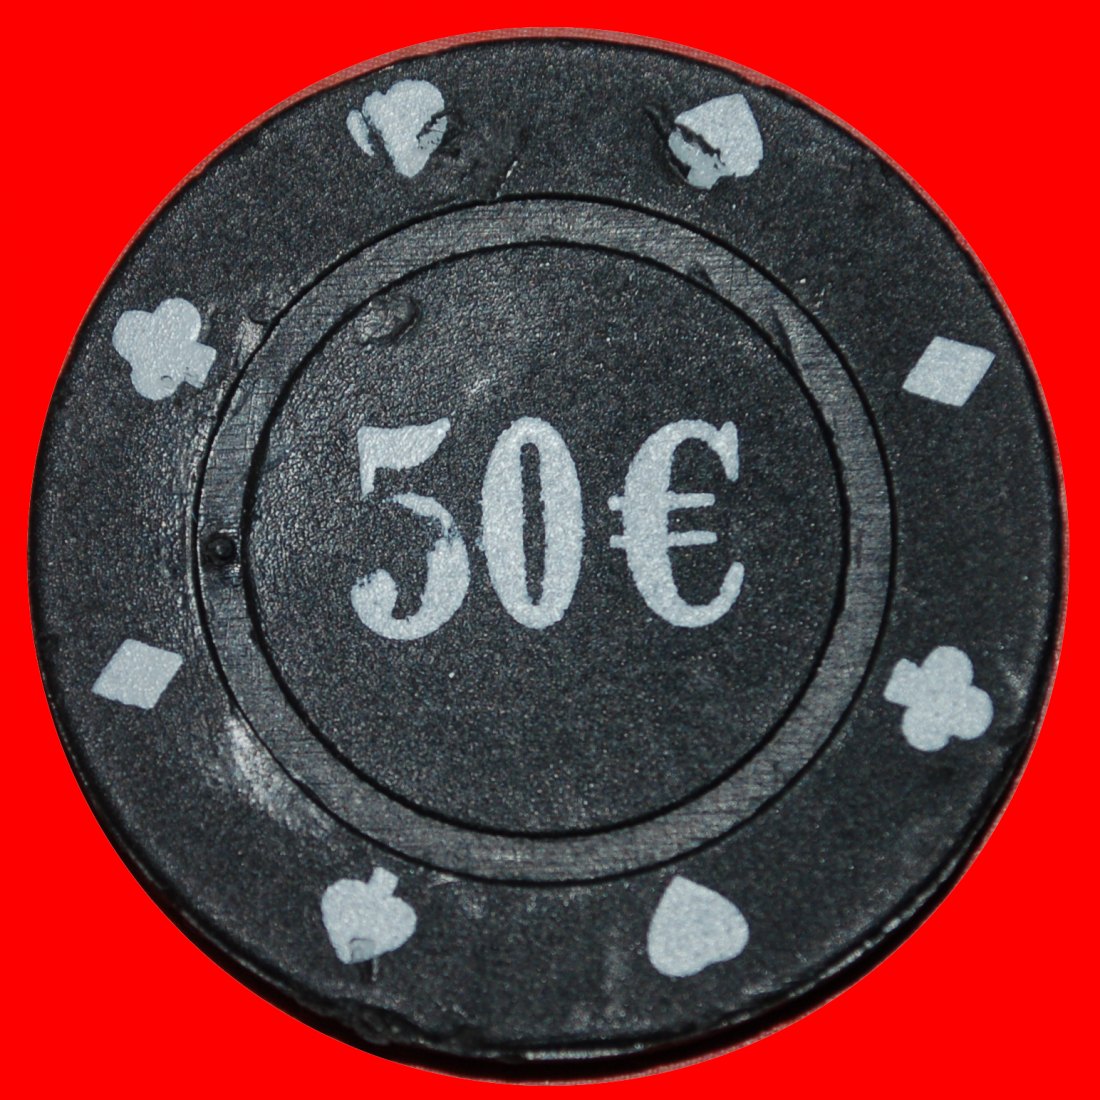  * GROSSE WERTUNG: UNBEKANNTES CASINO ★ 50 EURO POKER CHIP!★OHNE VORBEHALT!   